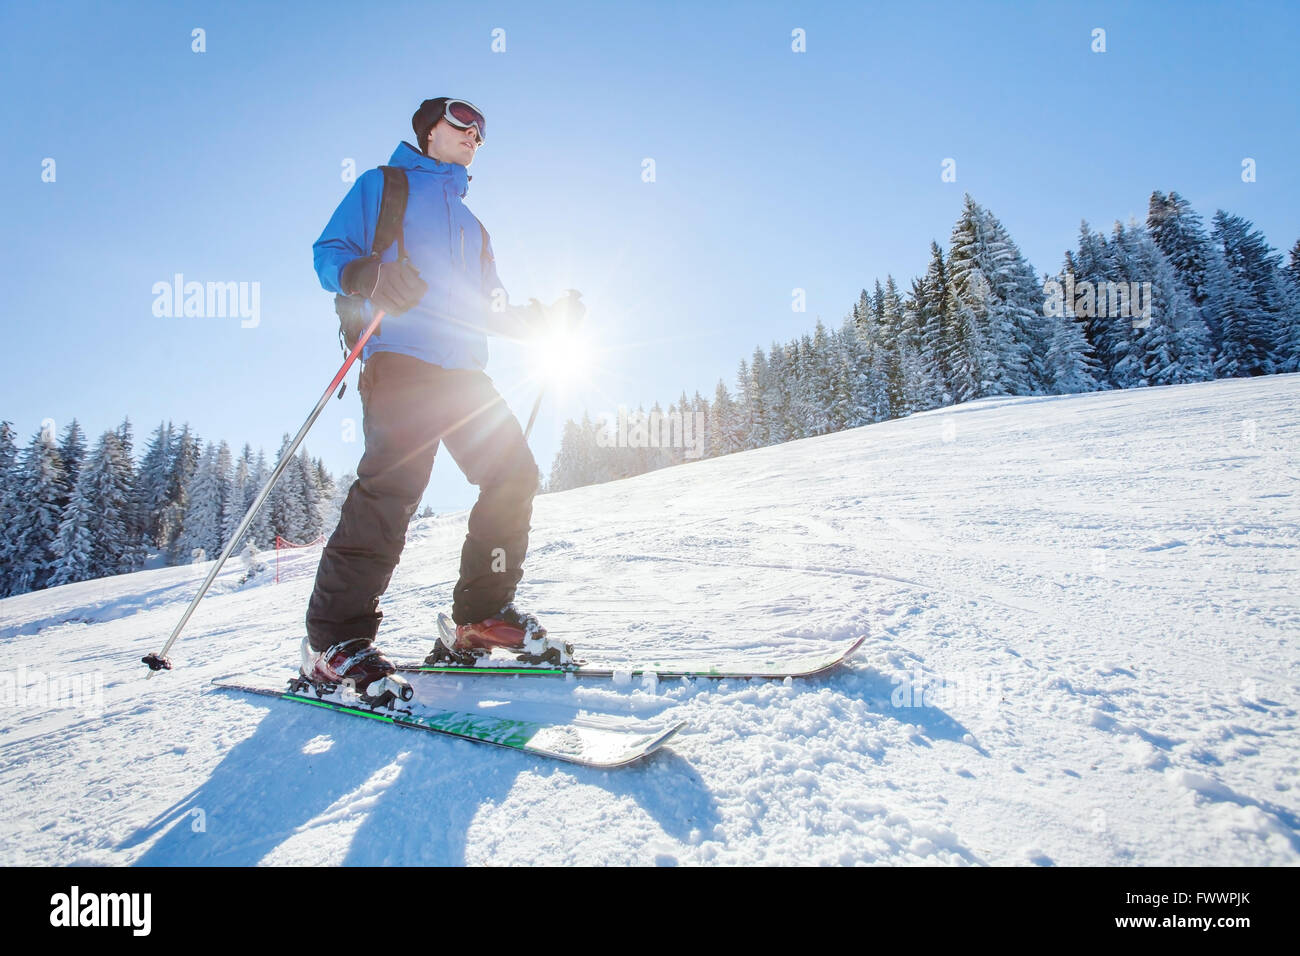 En ski, sport d'hiver des Alpes, jeune skieur sur la pente en journée ensoleillée Banque D'Images